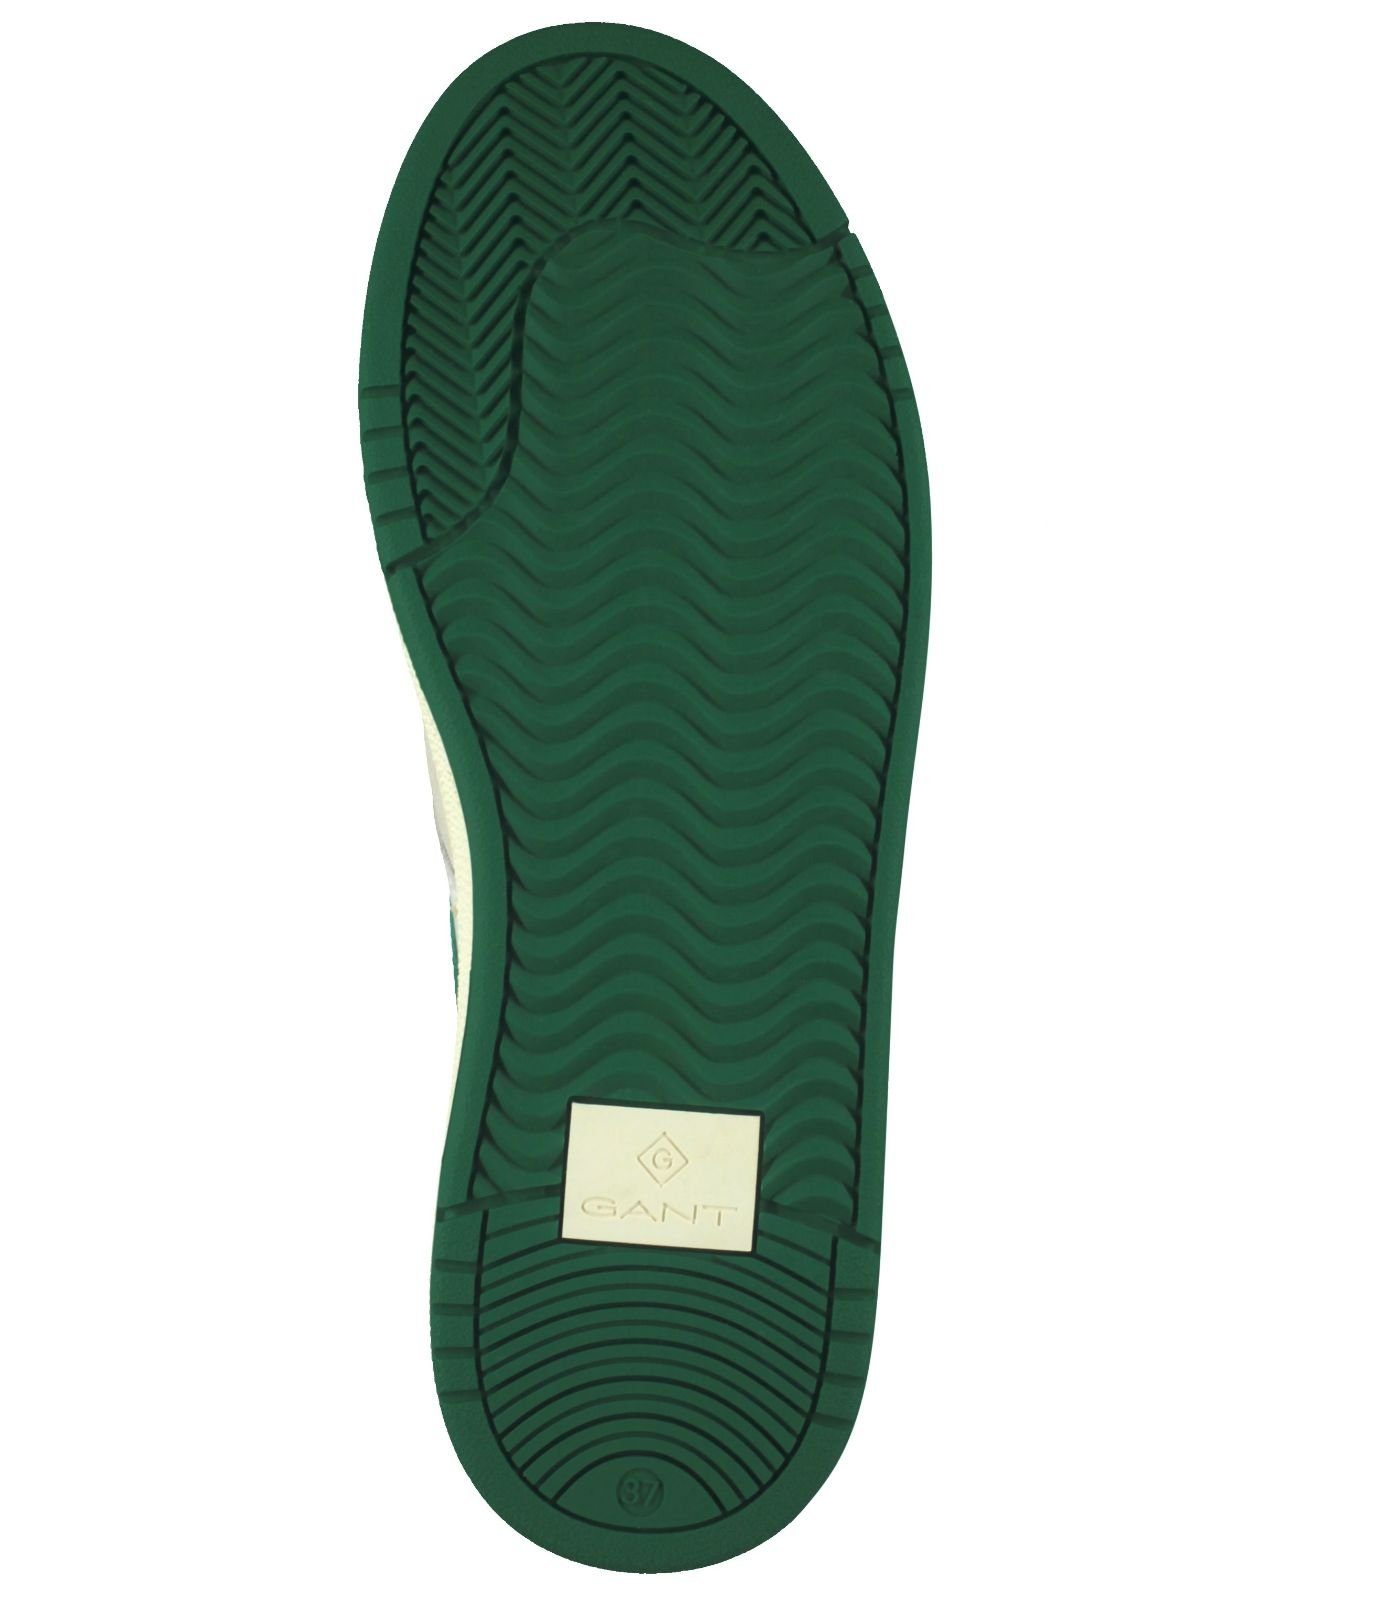 Gant Sneaker white (08002157) Leder green Sneaker